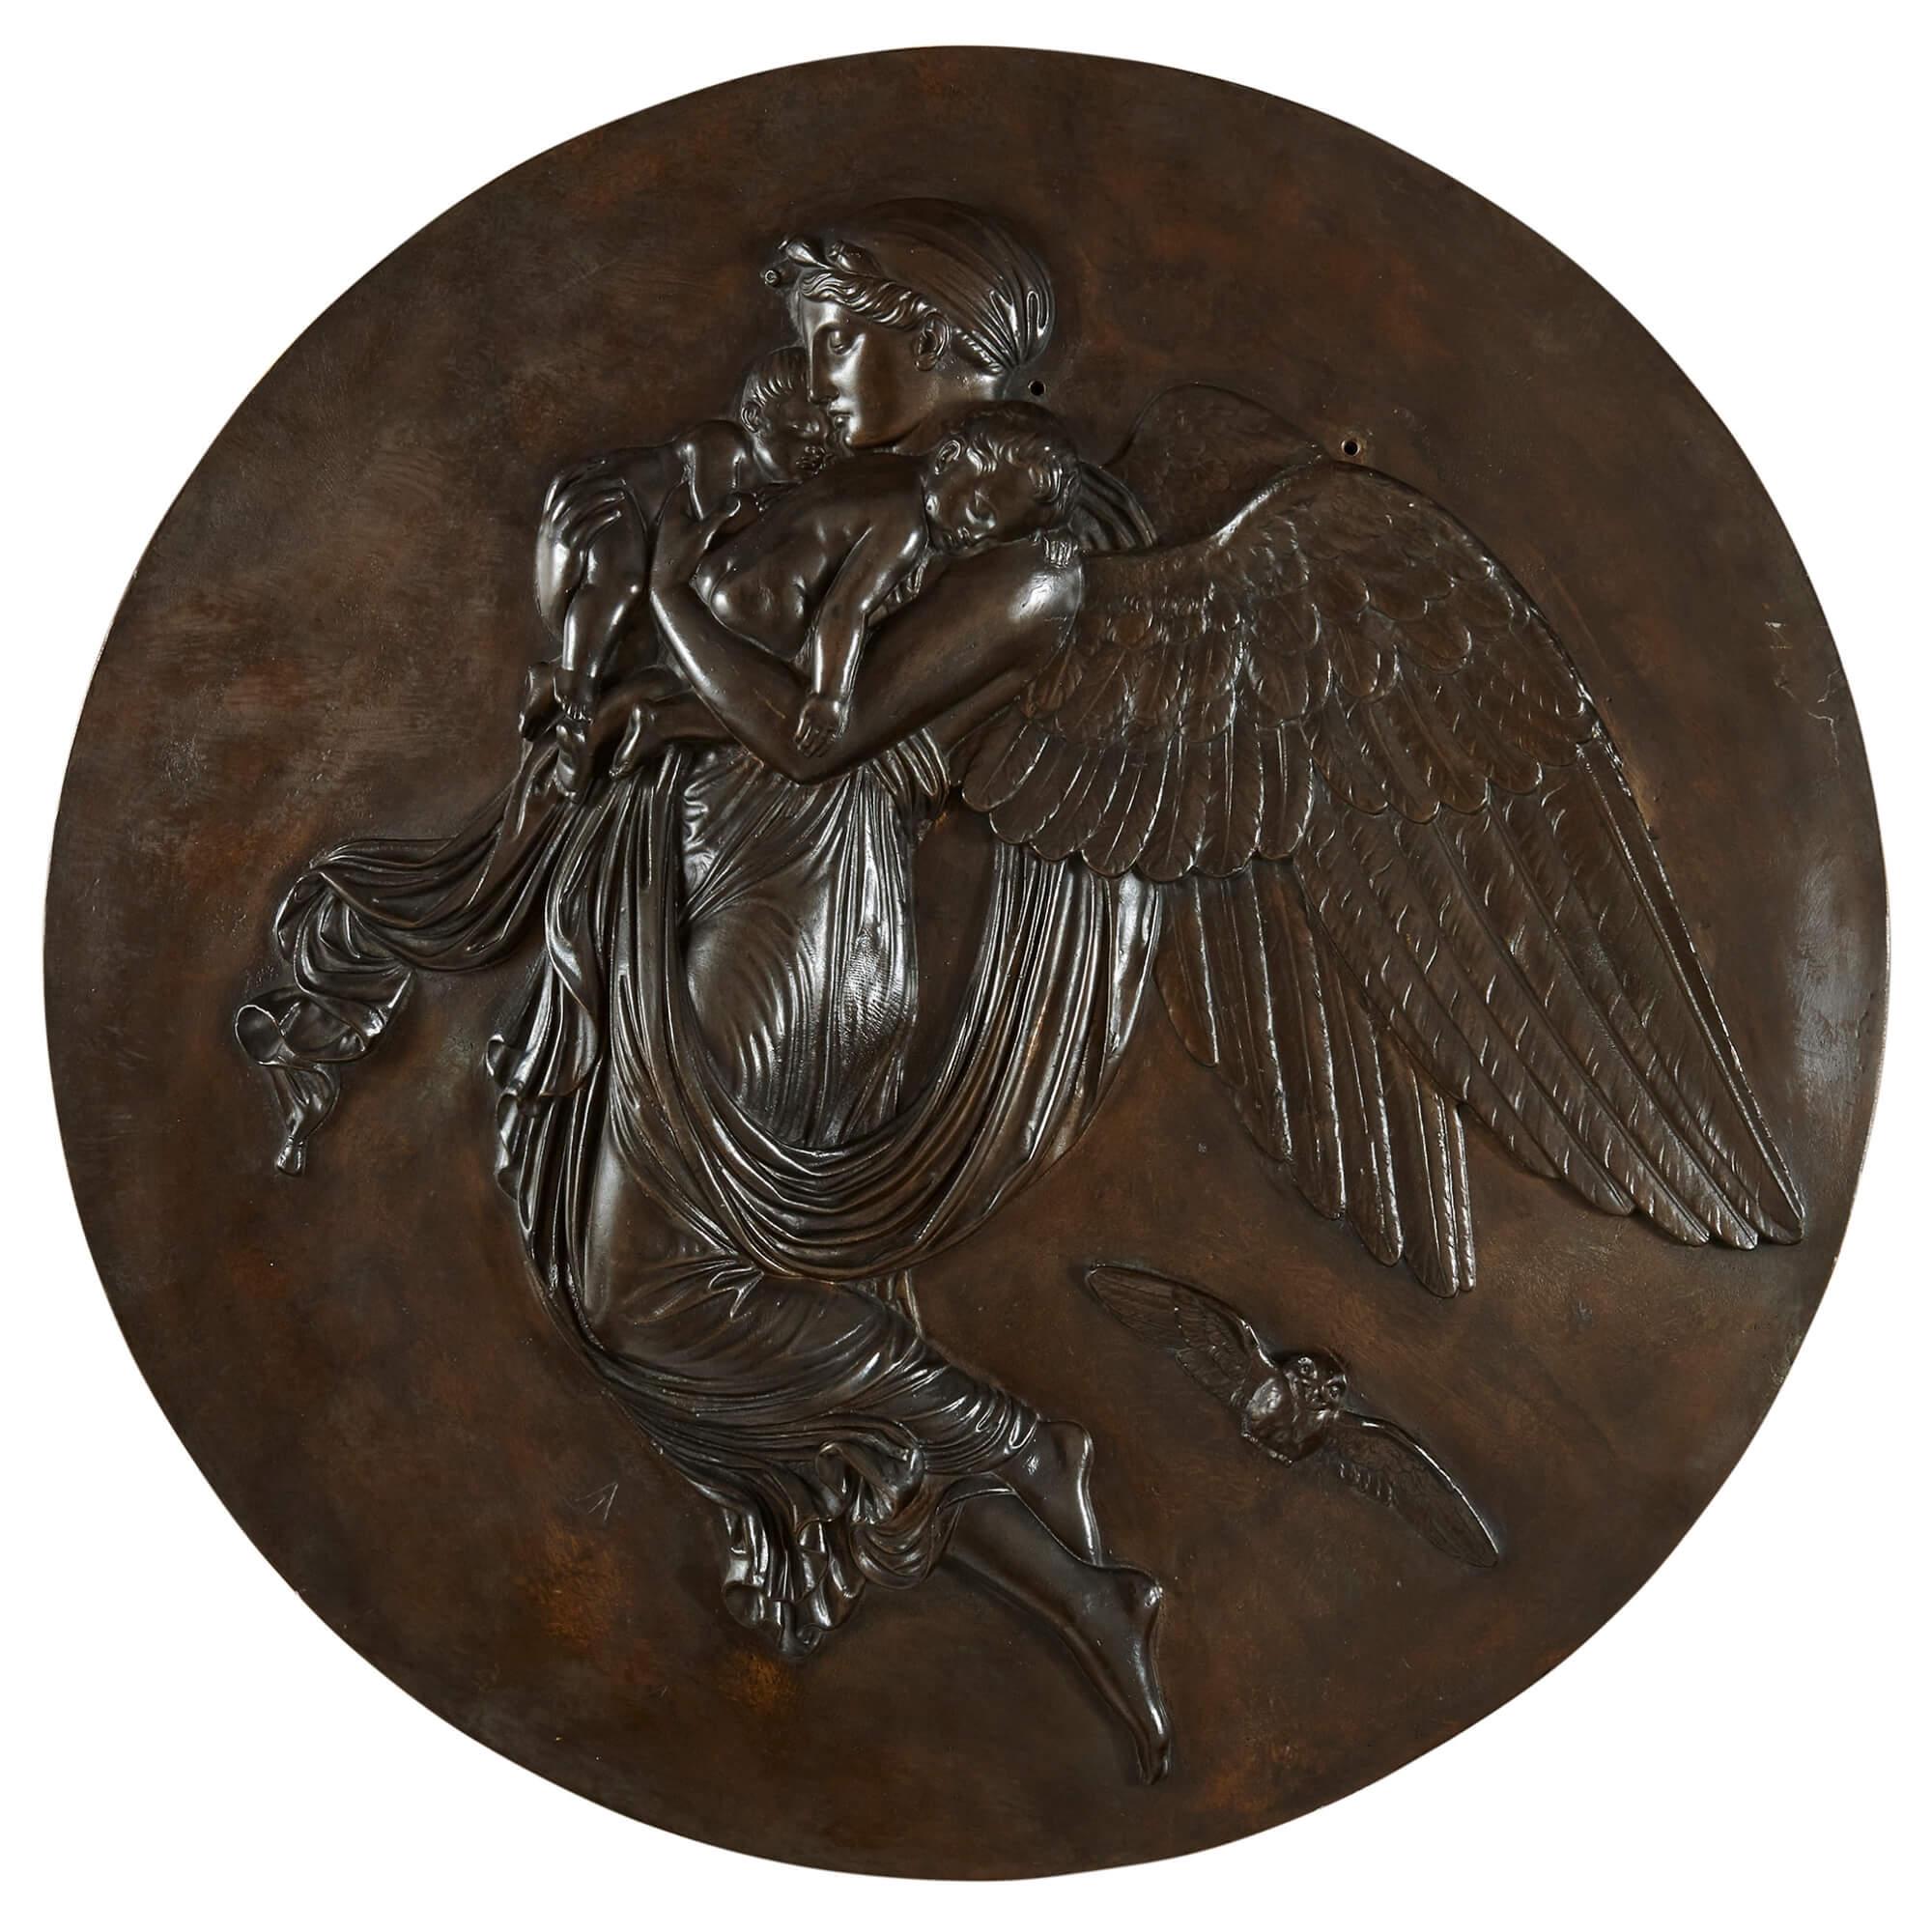 Une paire de plaques anciennes en bronze patiné représentant le jour et la nuit
Français, fin du 19ème siècle
80 cm de diamètre, 5 cm de profondeur

Inspirées des reliefs emblématiques de Bertel Thorvaldsen intitulés 